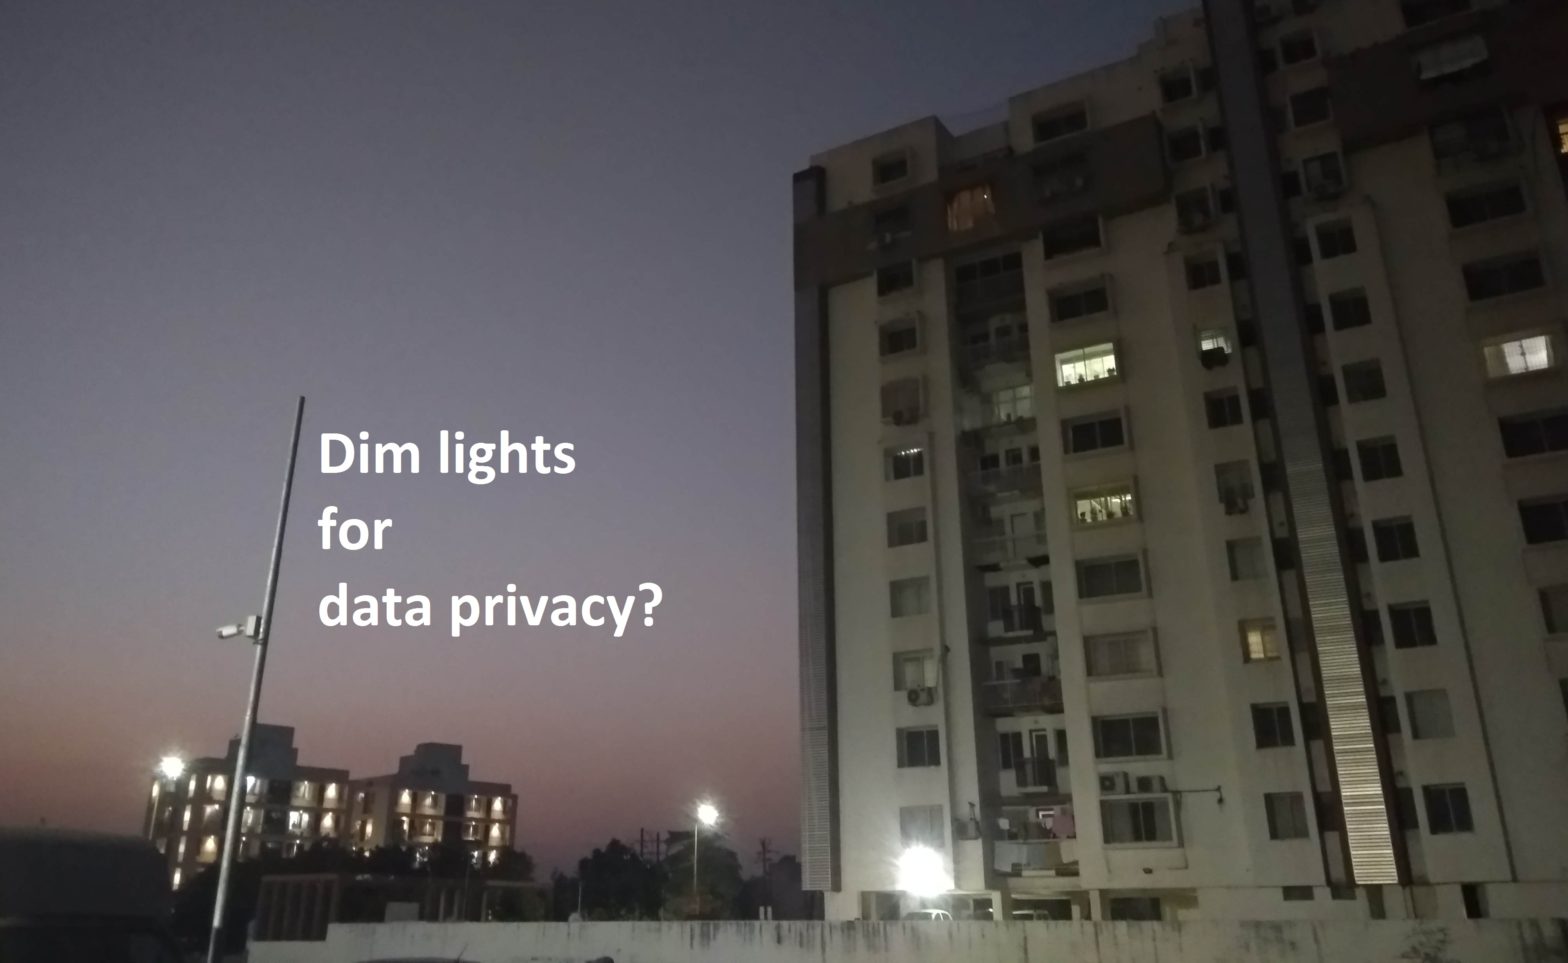 Dim future for data privacy?